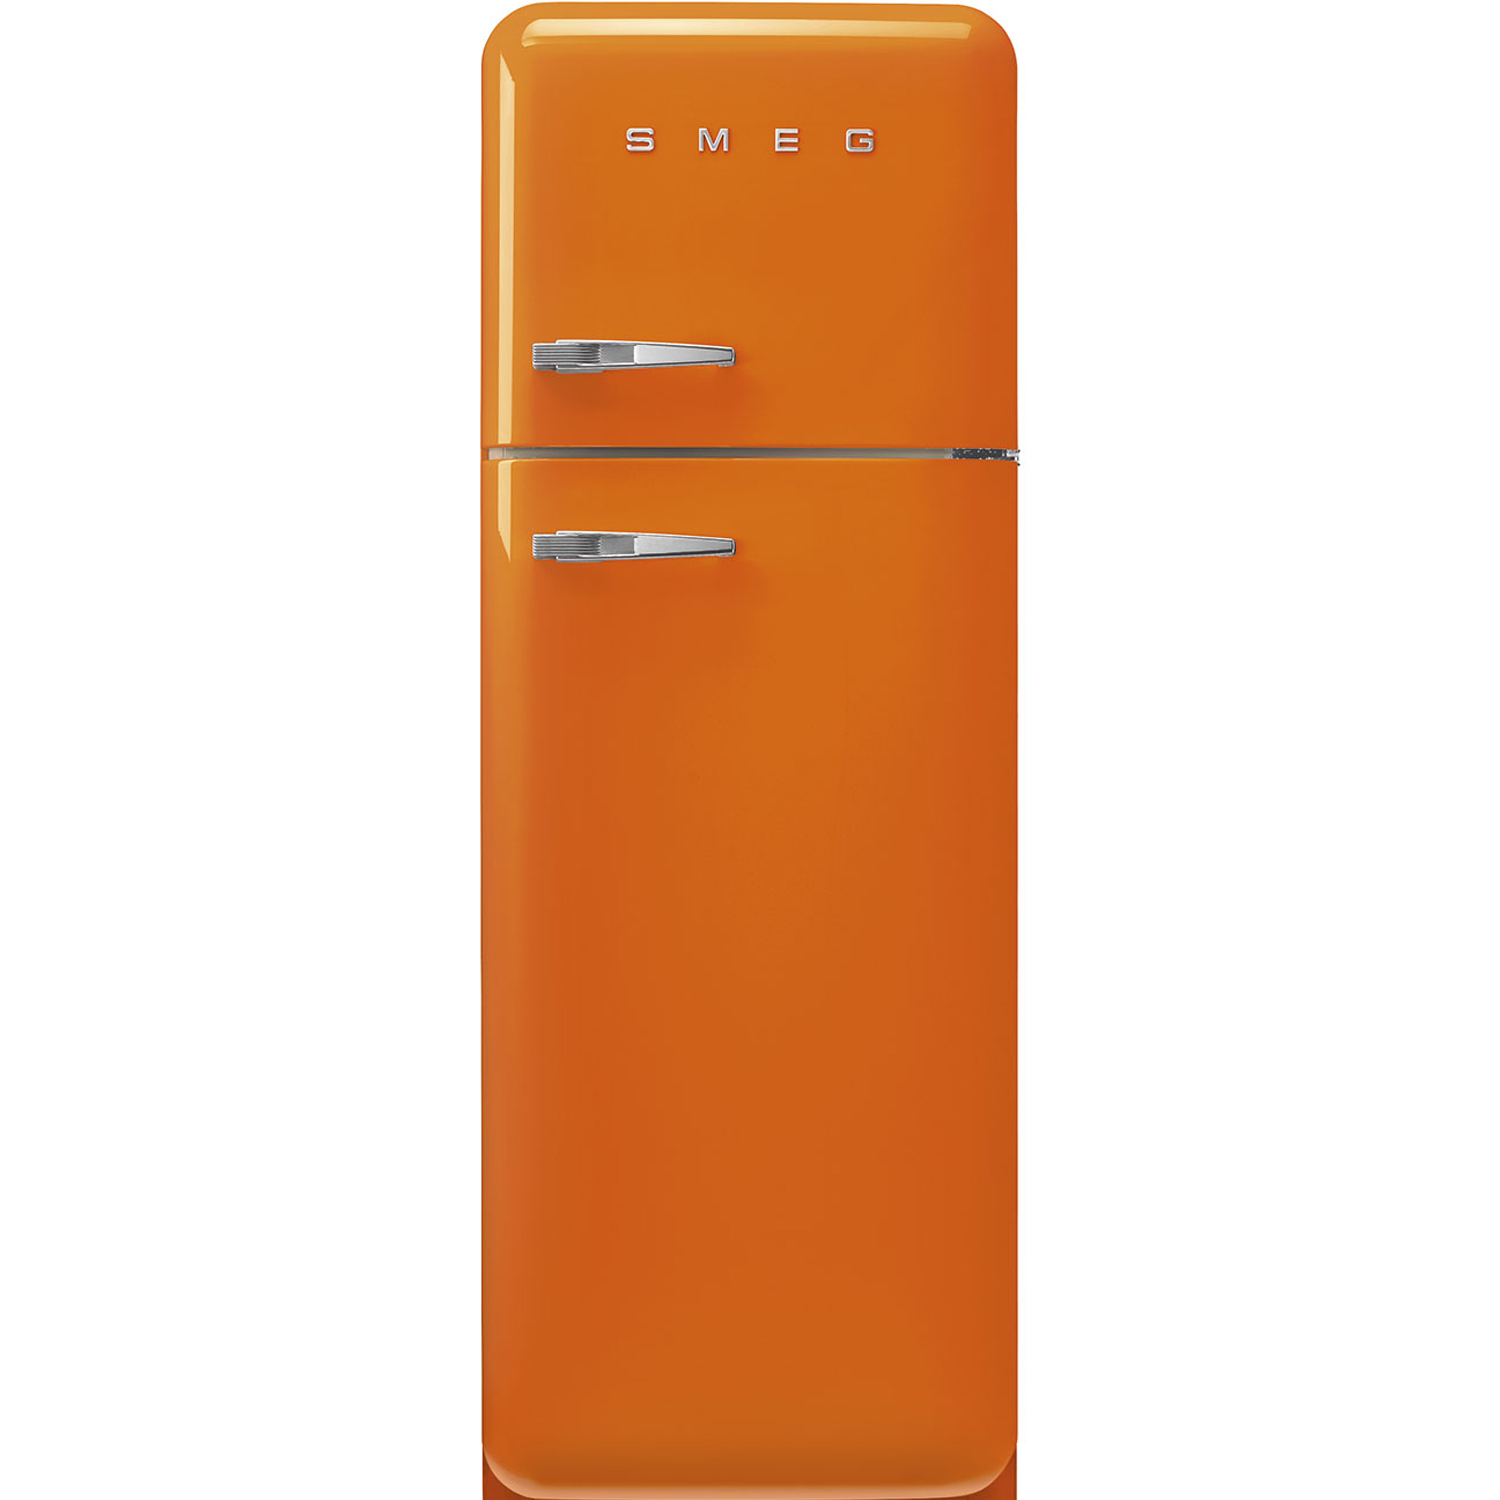 Холодильник двухкамерный купить в москве цена. Холодильник Smeg fab32lrd5. Холодильник Smeg fab30rpb5. Холодильник Smeg Fab 28rdmm5. Холодильники Smeg fab10lcr2.